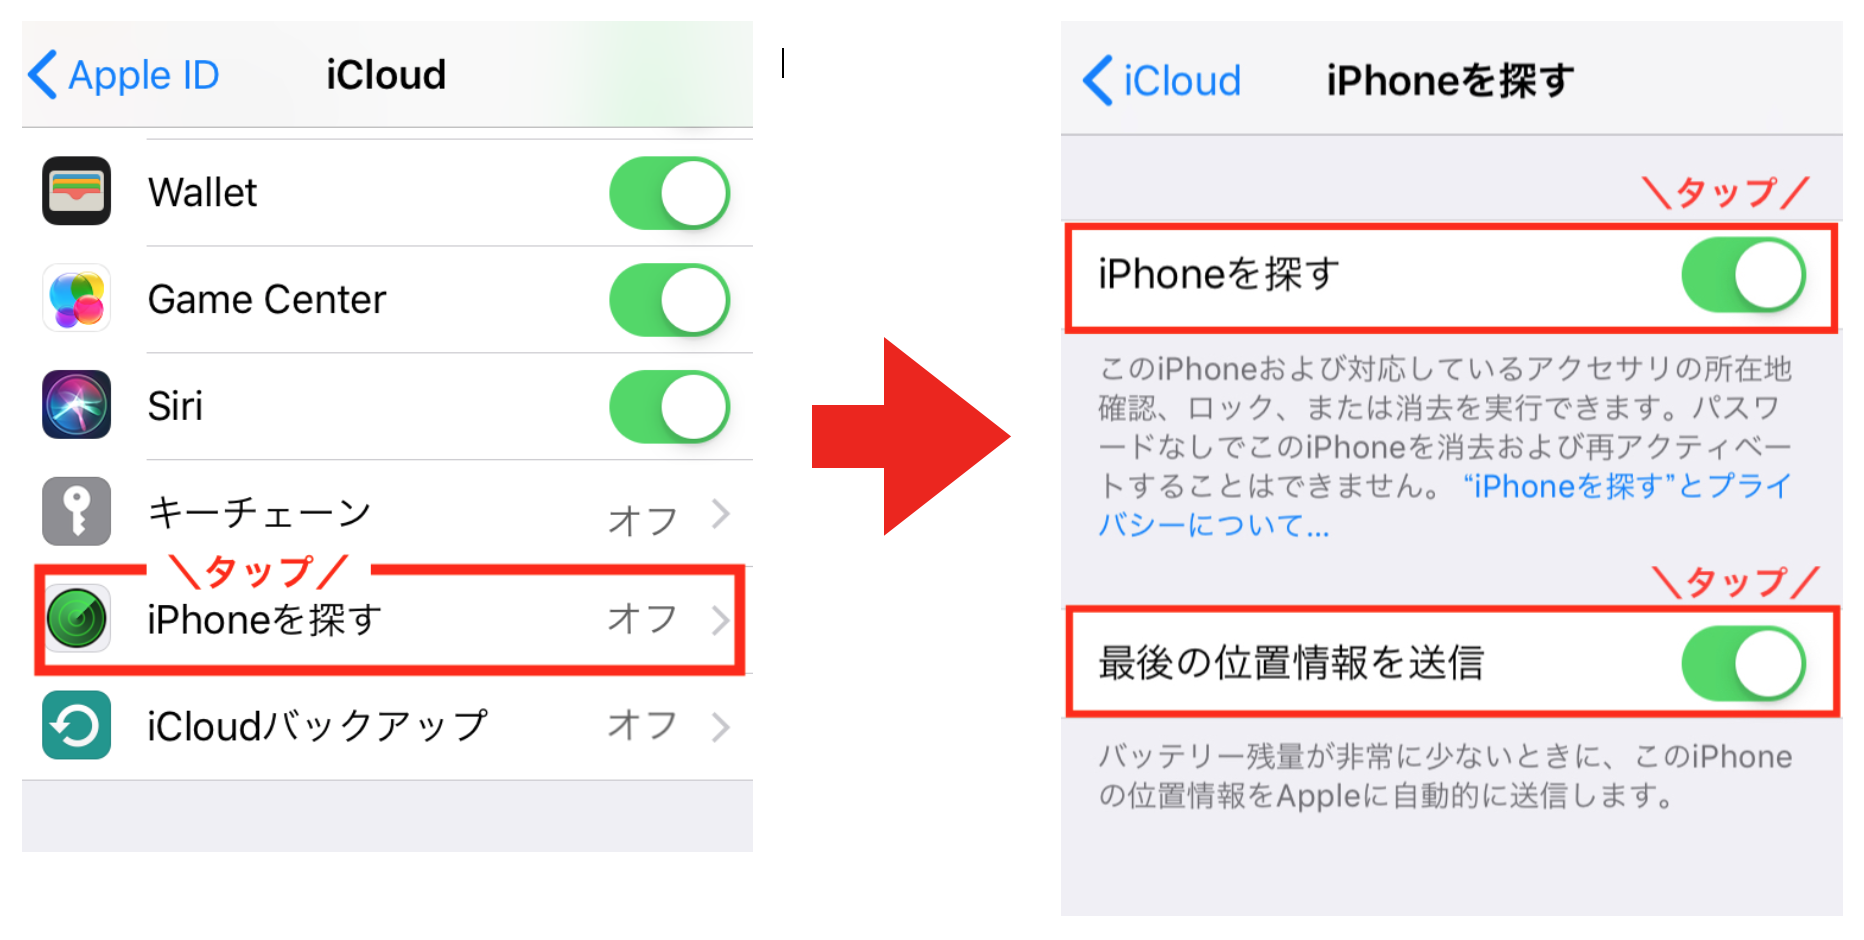 （３）画面を下から上になぞってスクロールし、「iPhoneを探す」を選択後、次の画面で右にあるスライダーをタップして「オン」に切り替えます。